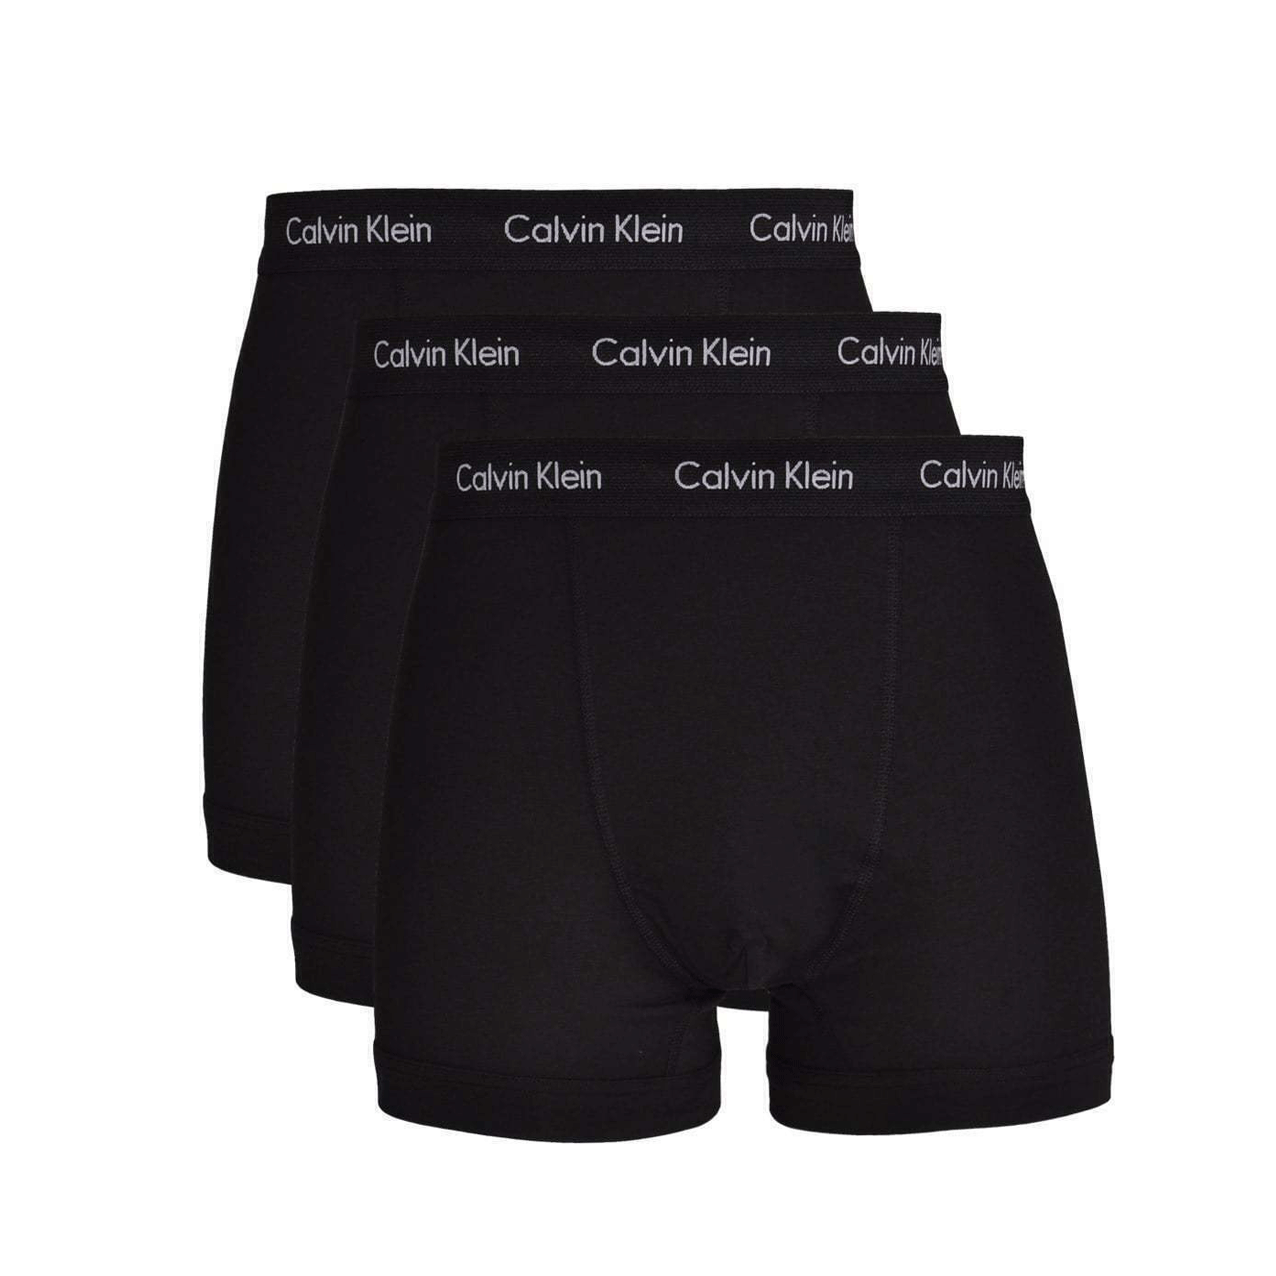 Men's Calvin Klein Cotton 3 Pack Underwear Boxers Low Rise Trunks Briefs U2662G-XWB freeshipping - Benson66